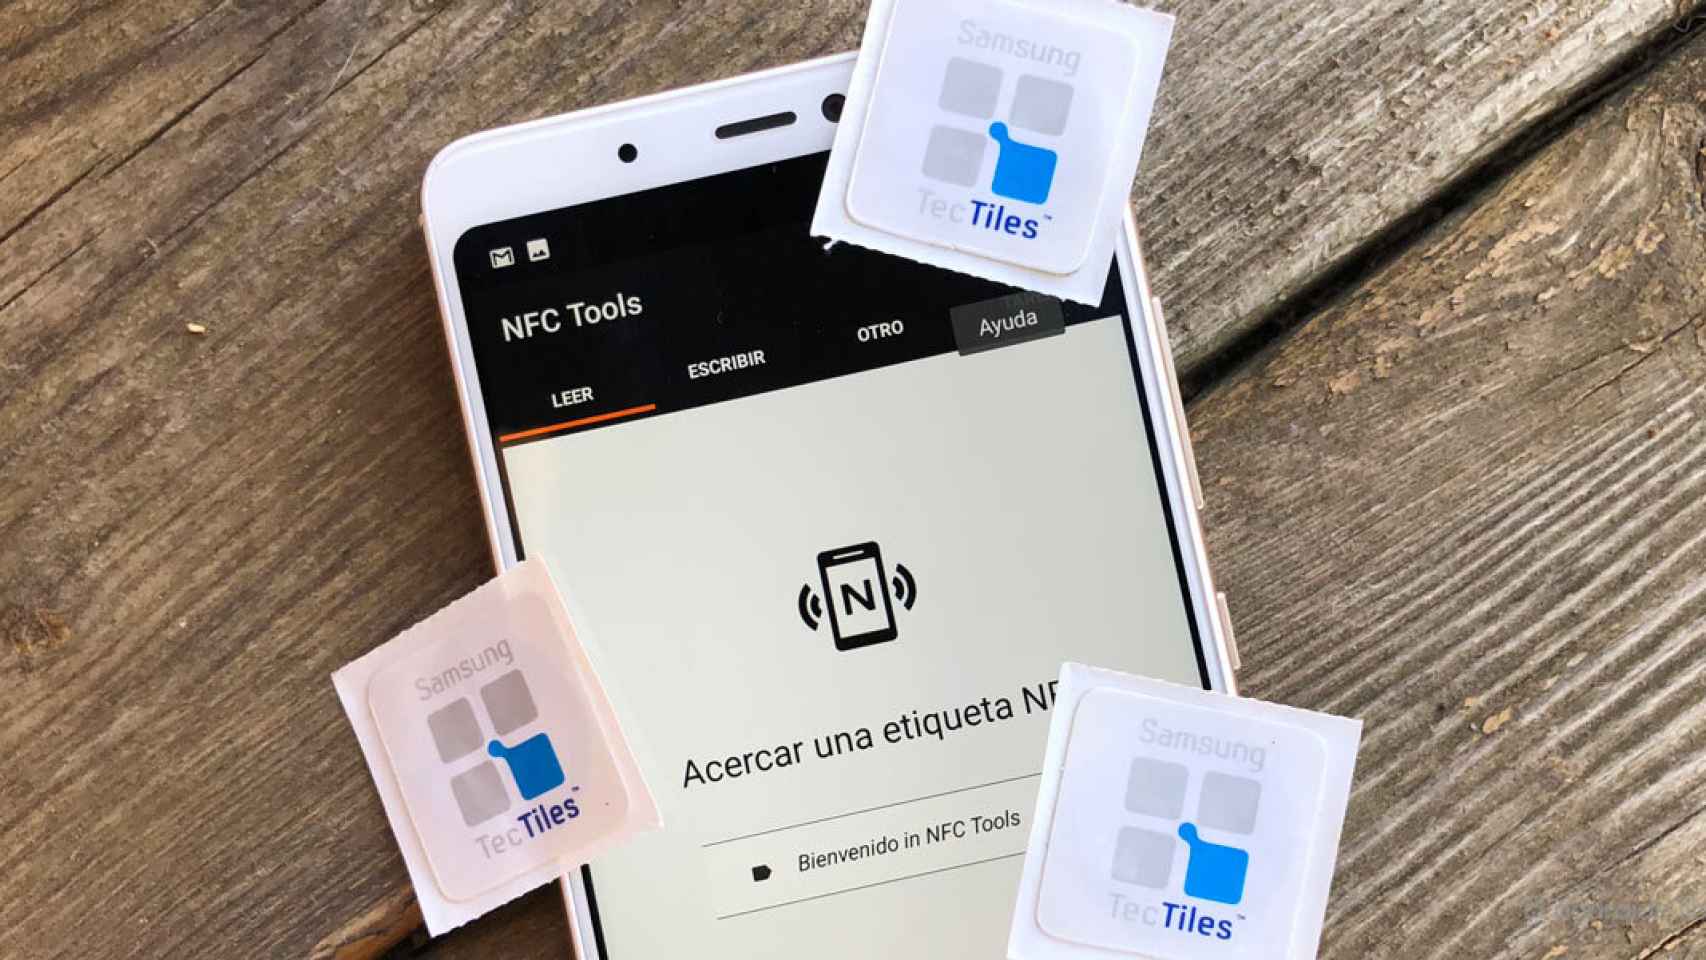 Etiquetas NFC ¿Qué son? ¿Qué puedo hacer con ellas?